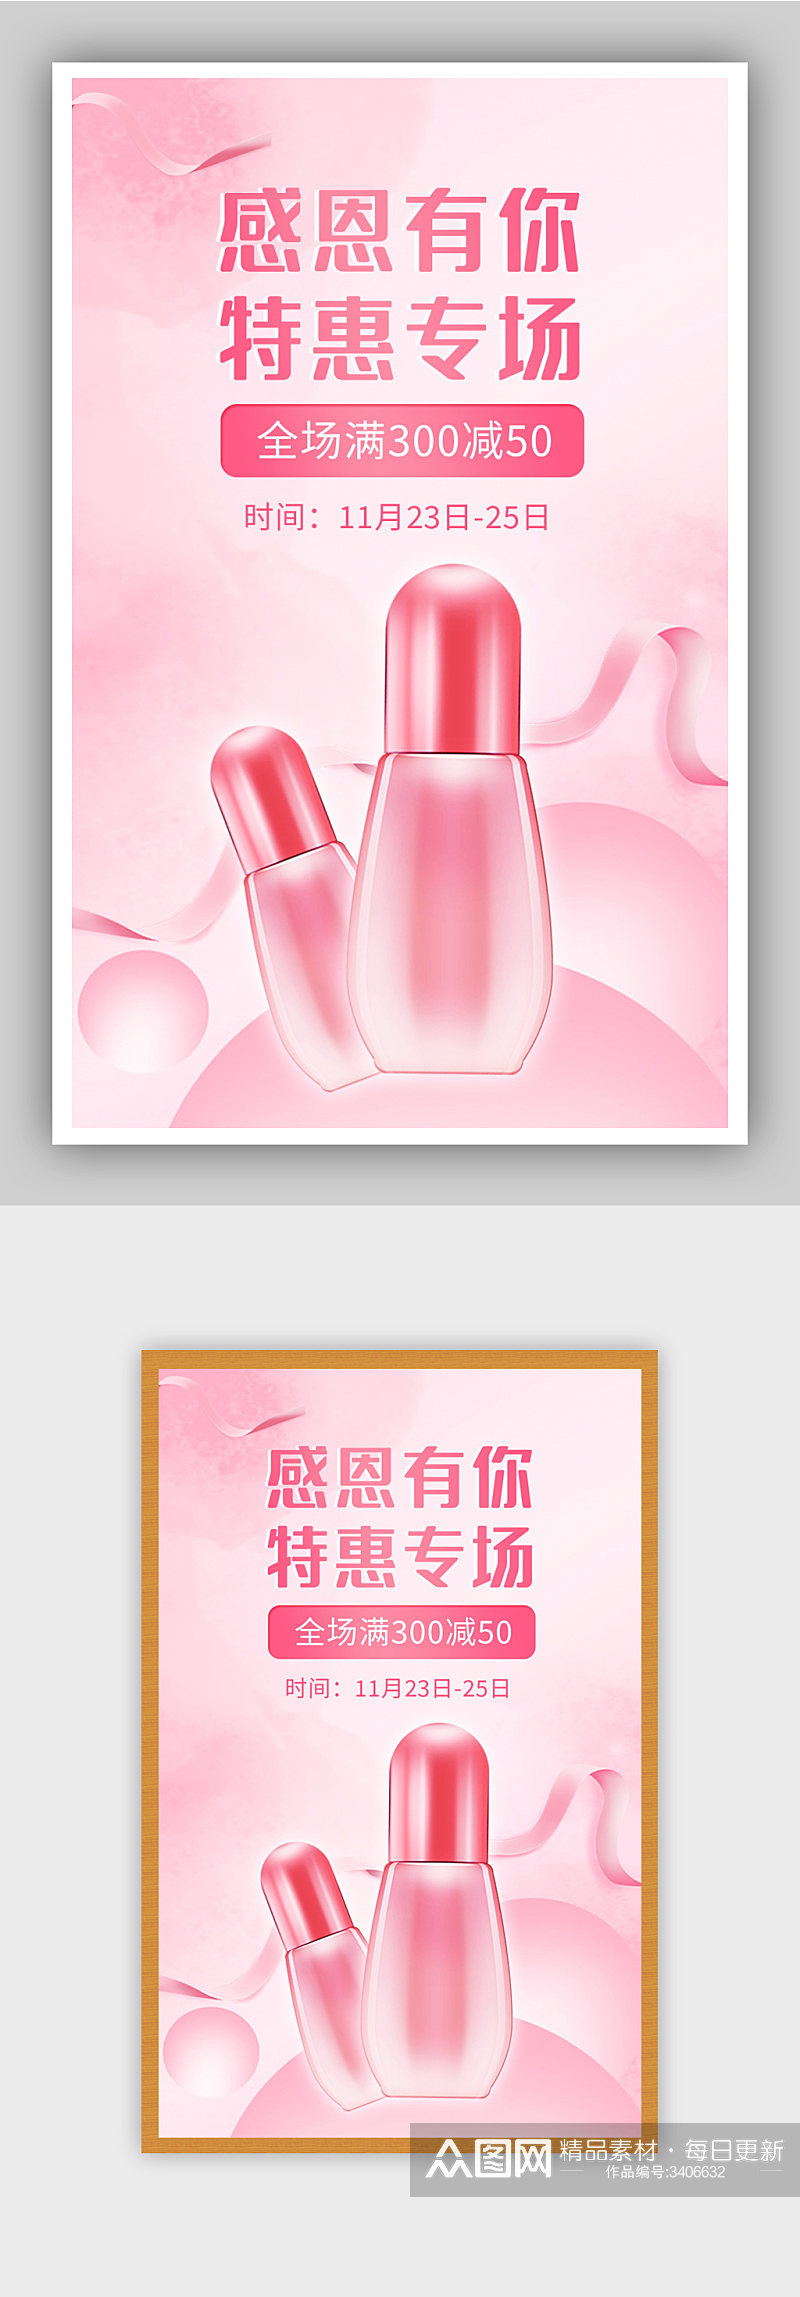 粉色背景简约感恩节回馈季美妆海报素材